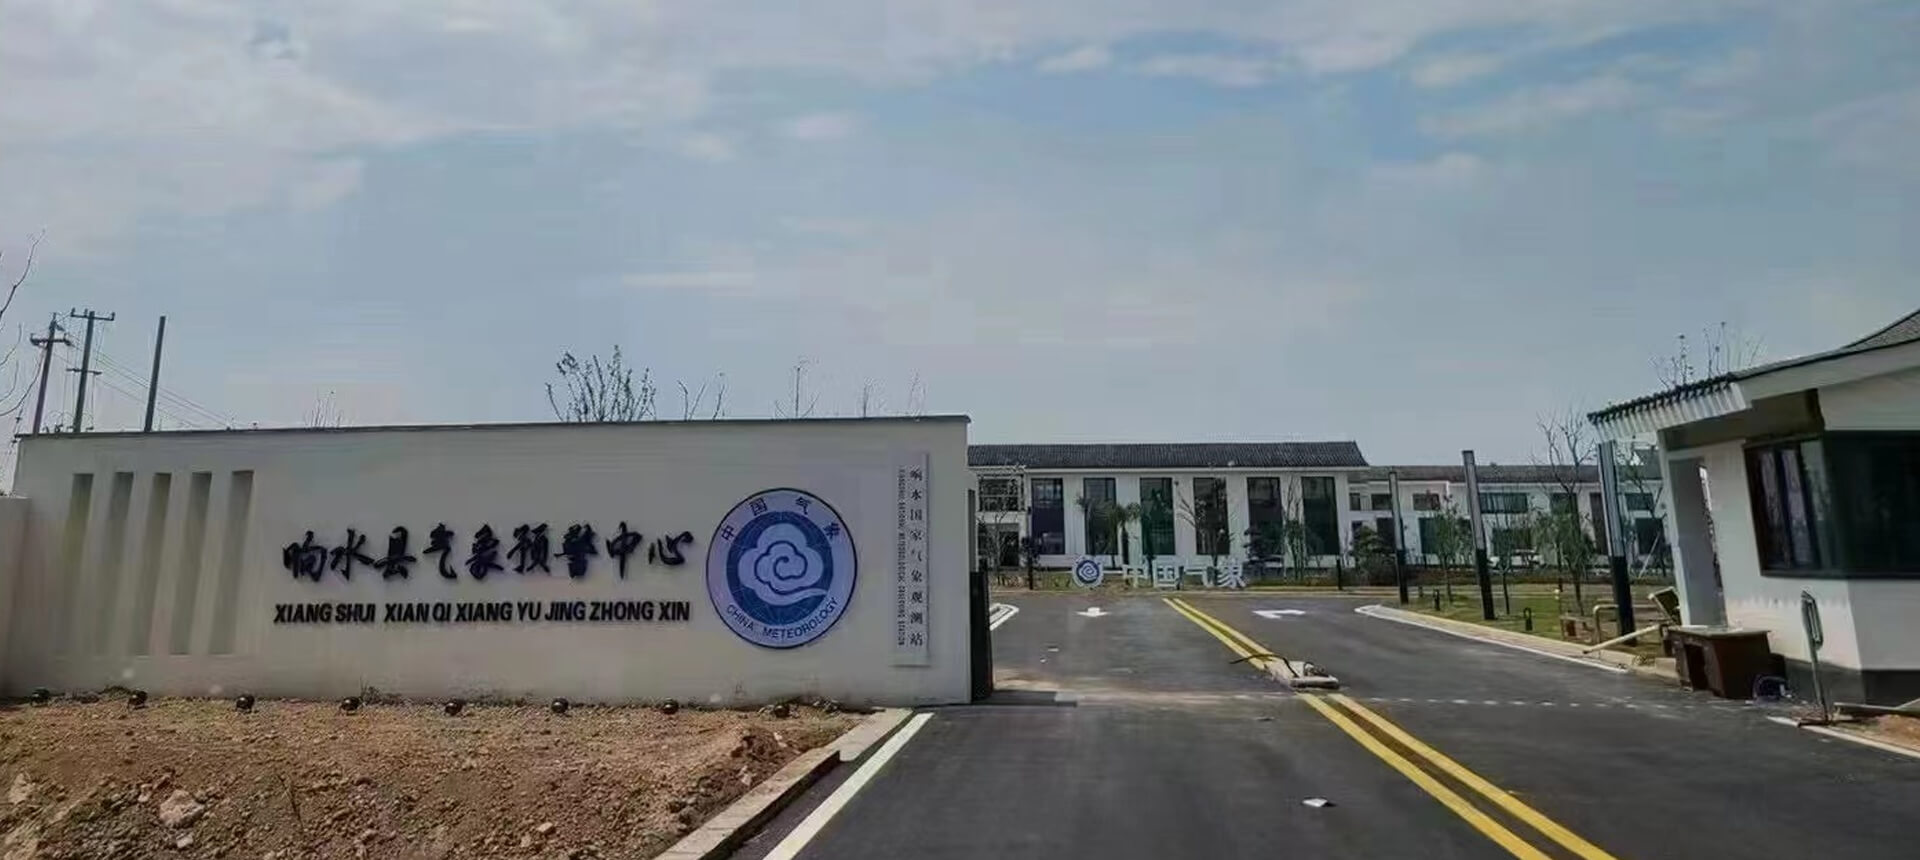 Sistema de conferencia sin papel para meteorología de China en Jiangsu